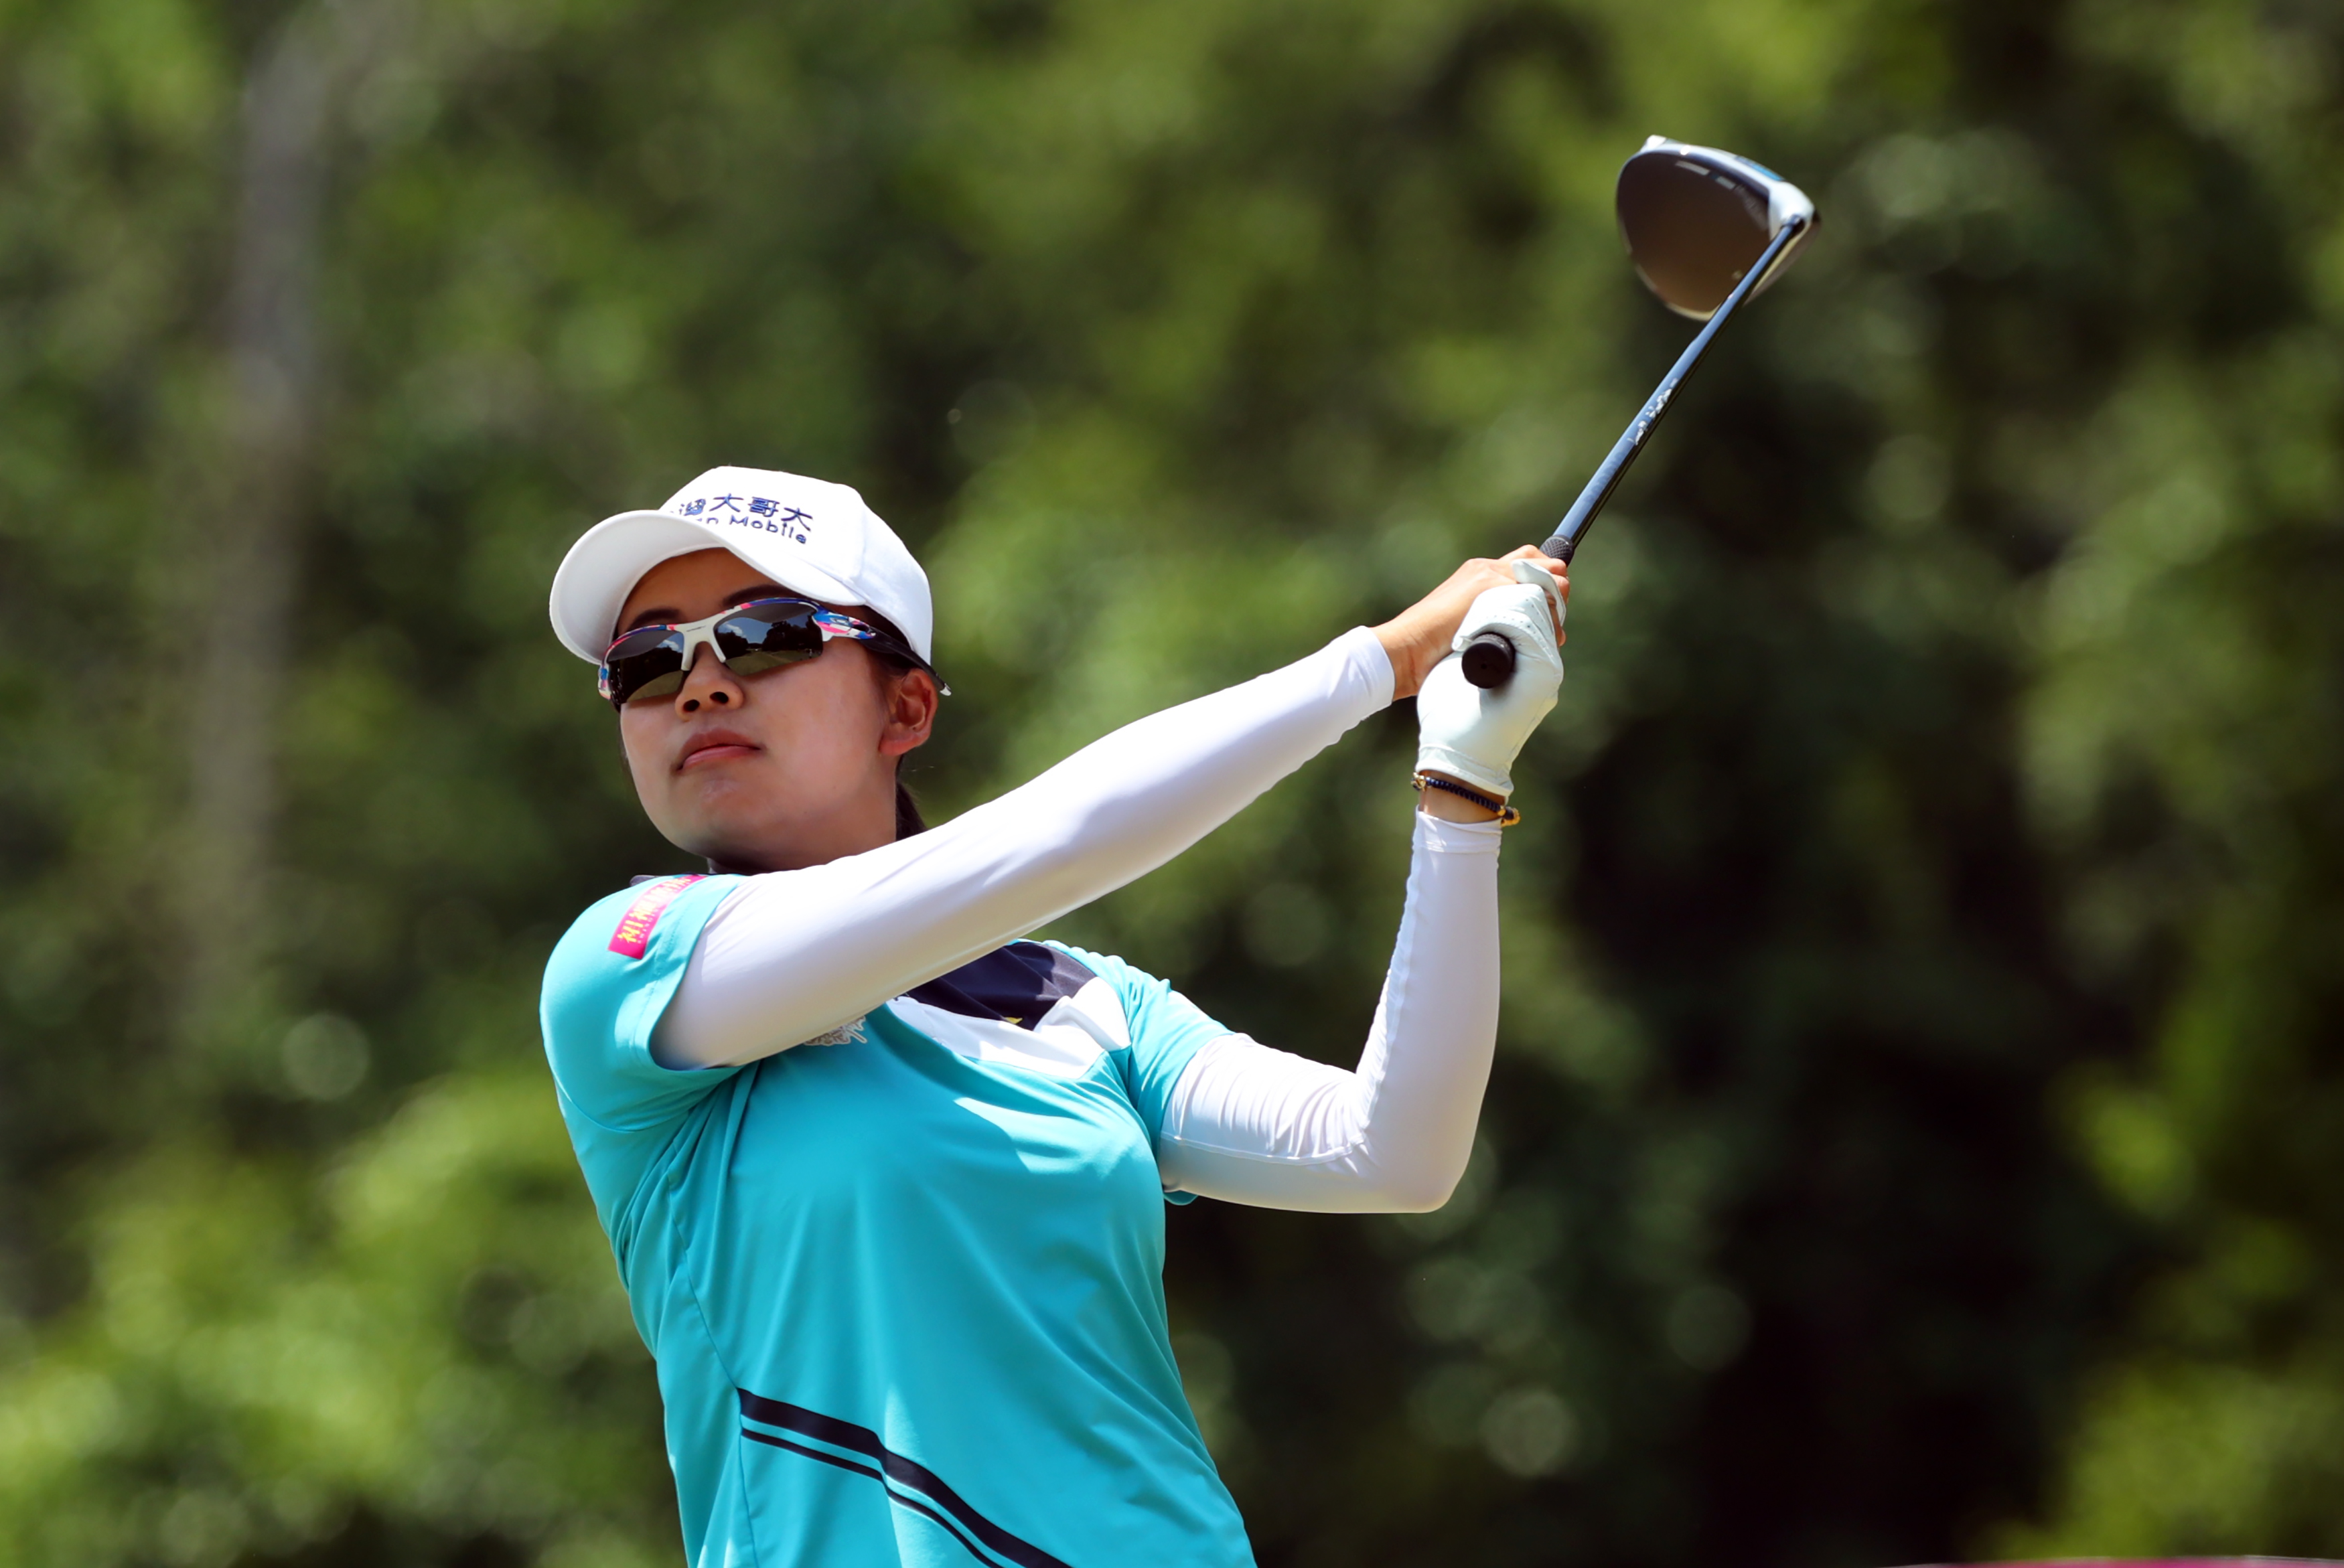 Golfer Đài Loan có danh hiệu đầu tiên trên LPGA